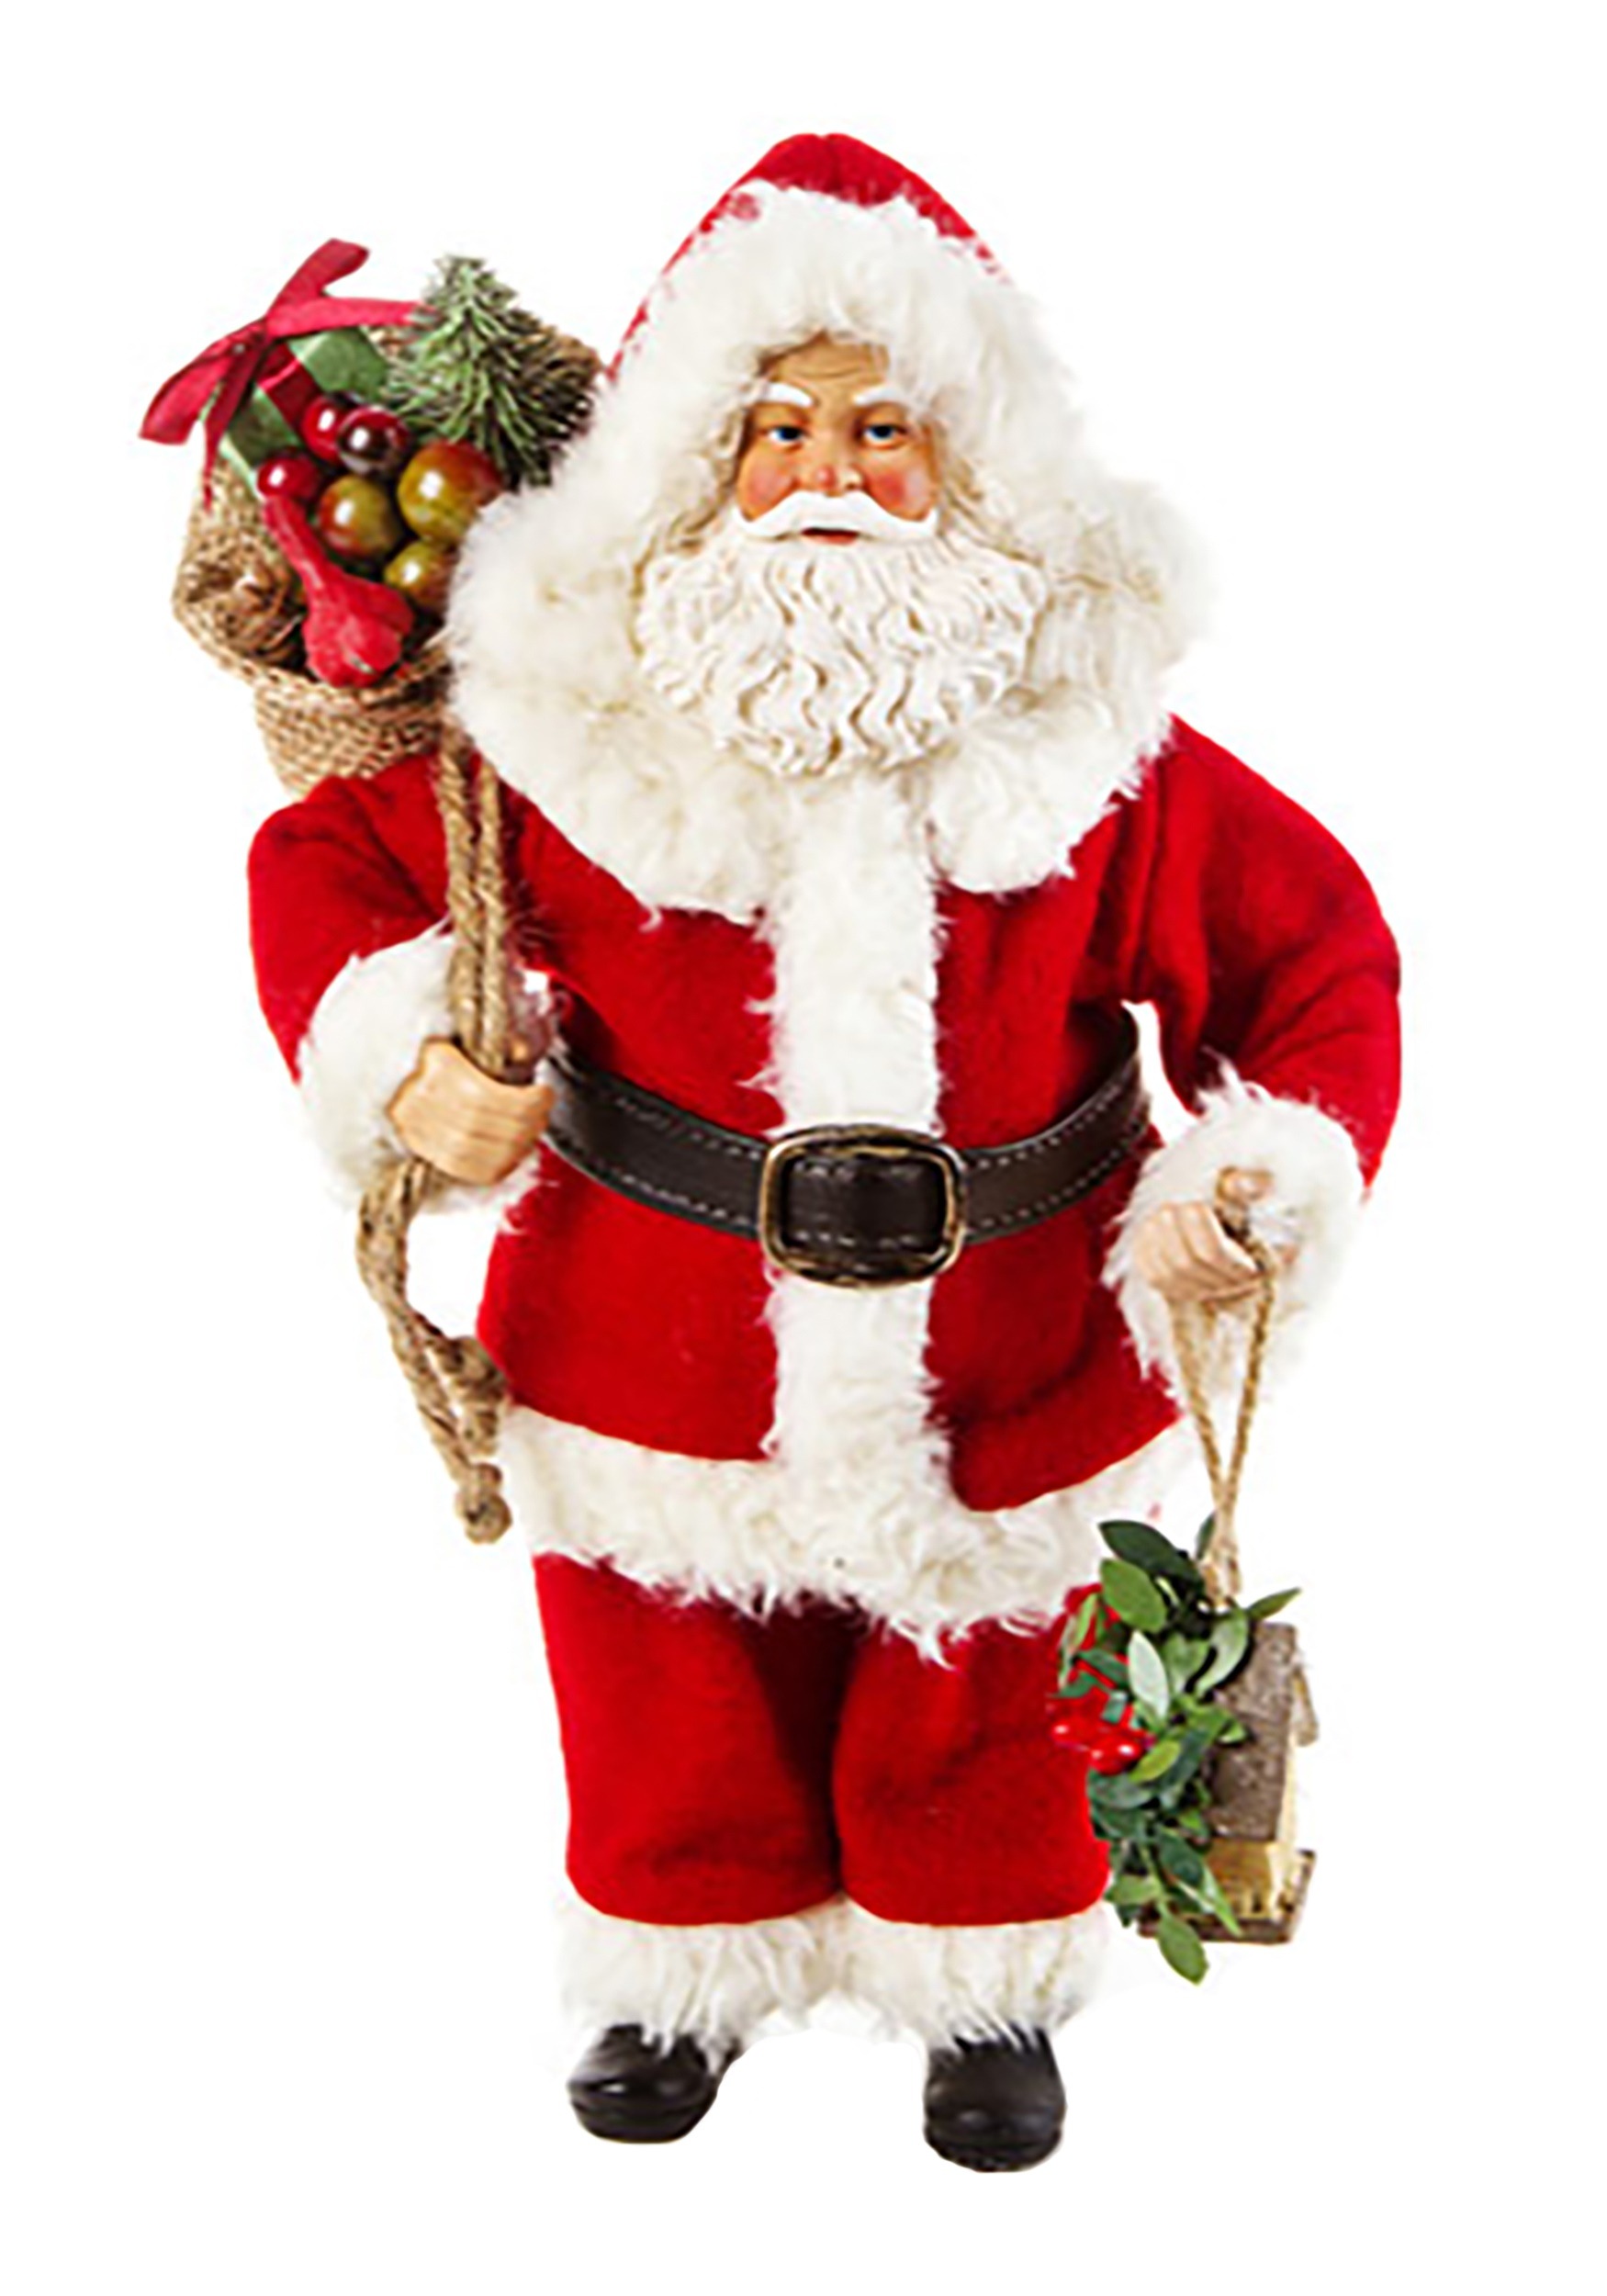 Classic 10.5" Santa Claus Figurine